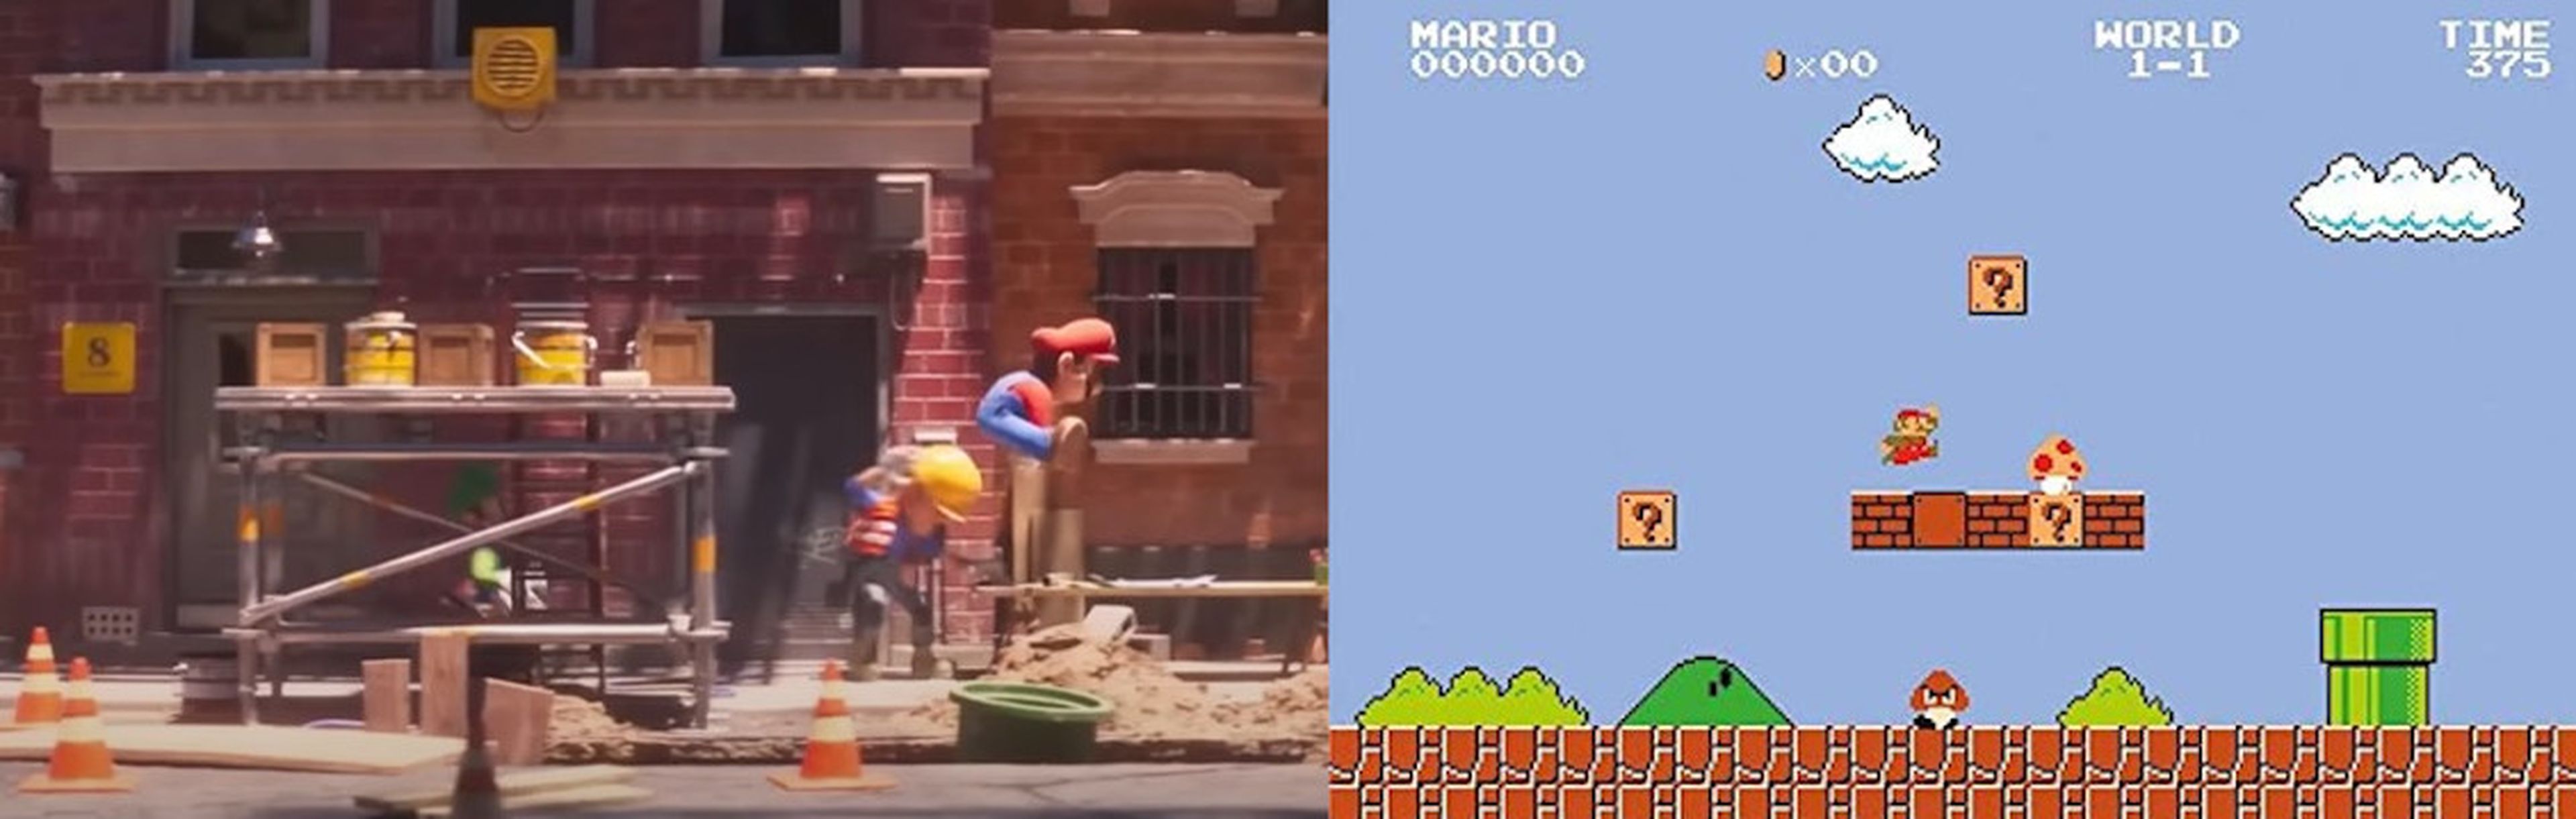 Super Mario Bros. Película